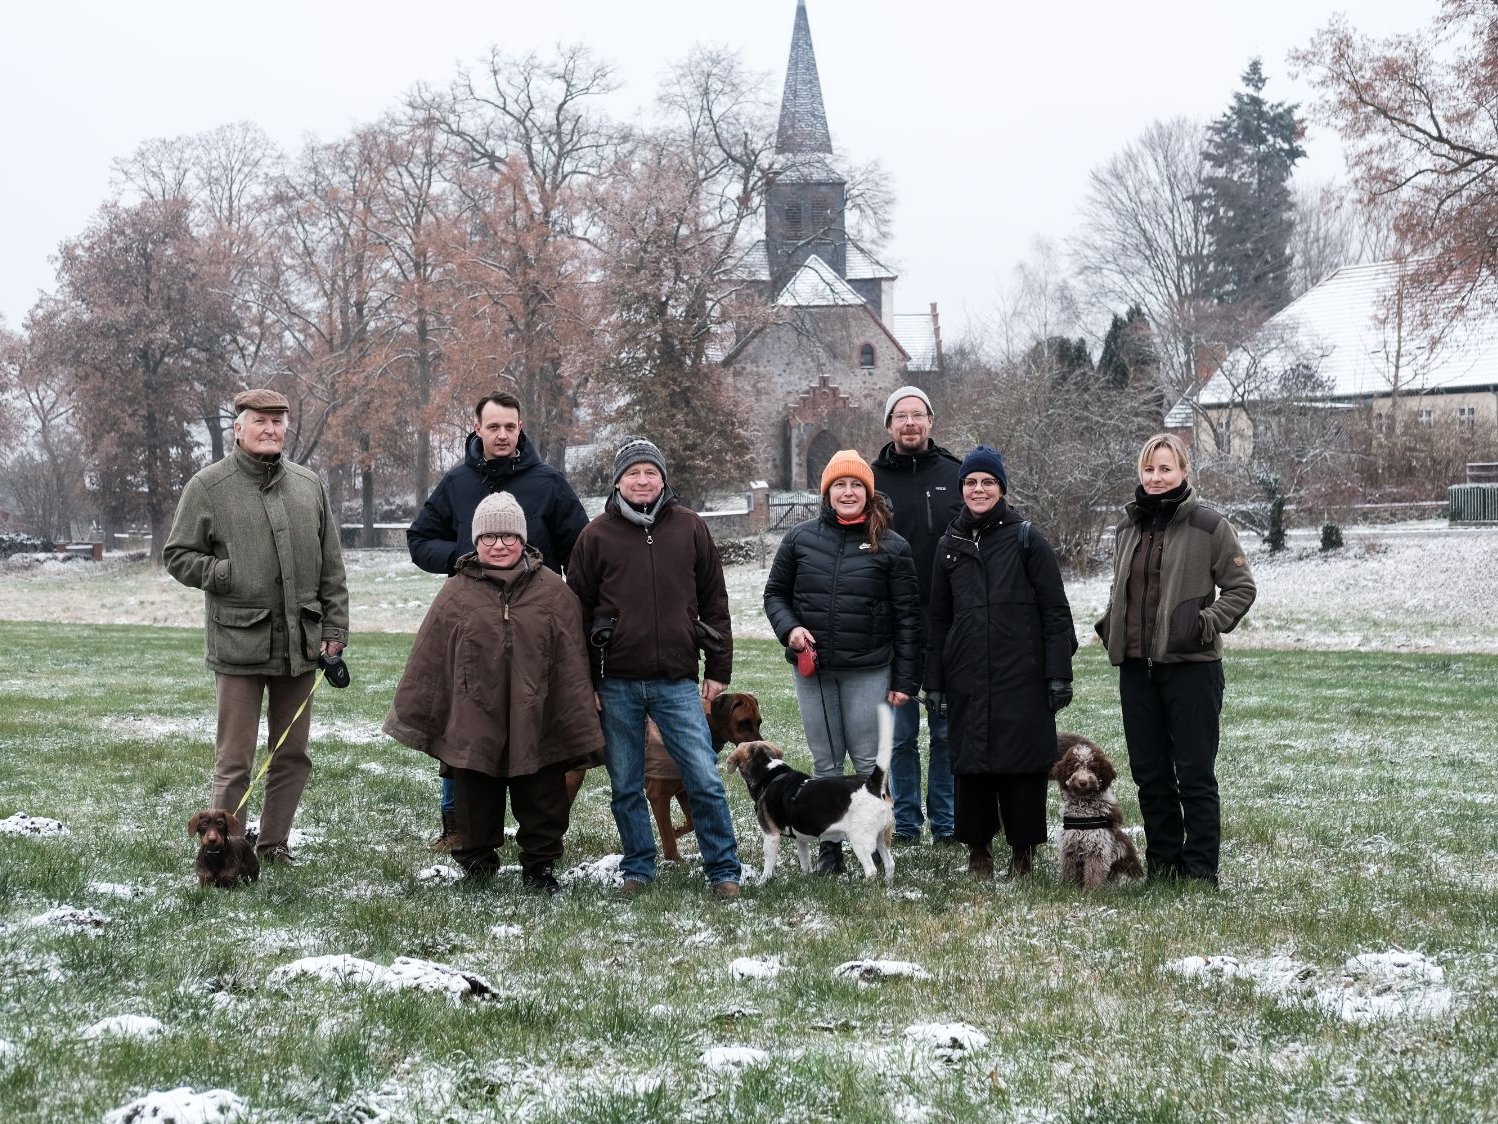 Gruppenfoto der Auftraggebergruppe von Sauen mit Ateliers Pompiers, Judith Hopf und Florian Zeyfang und Mediatorin Lea Schleiffenbaum auf einer Wiese im Winter